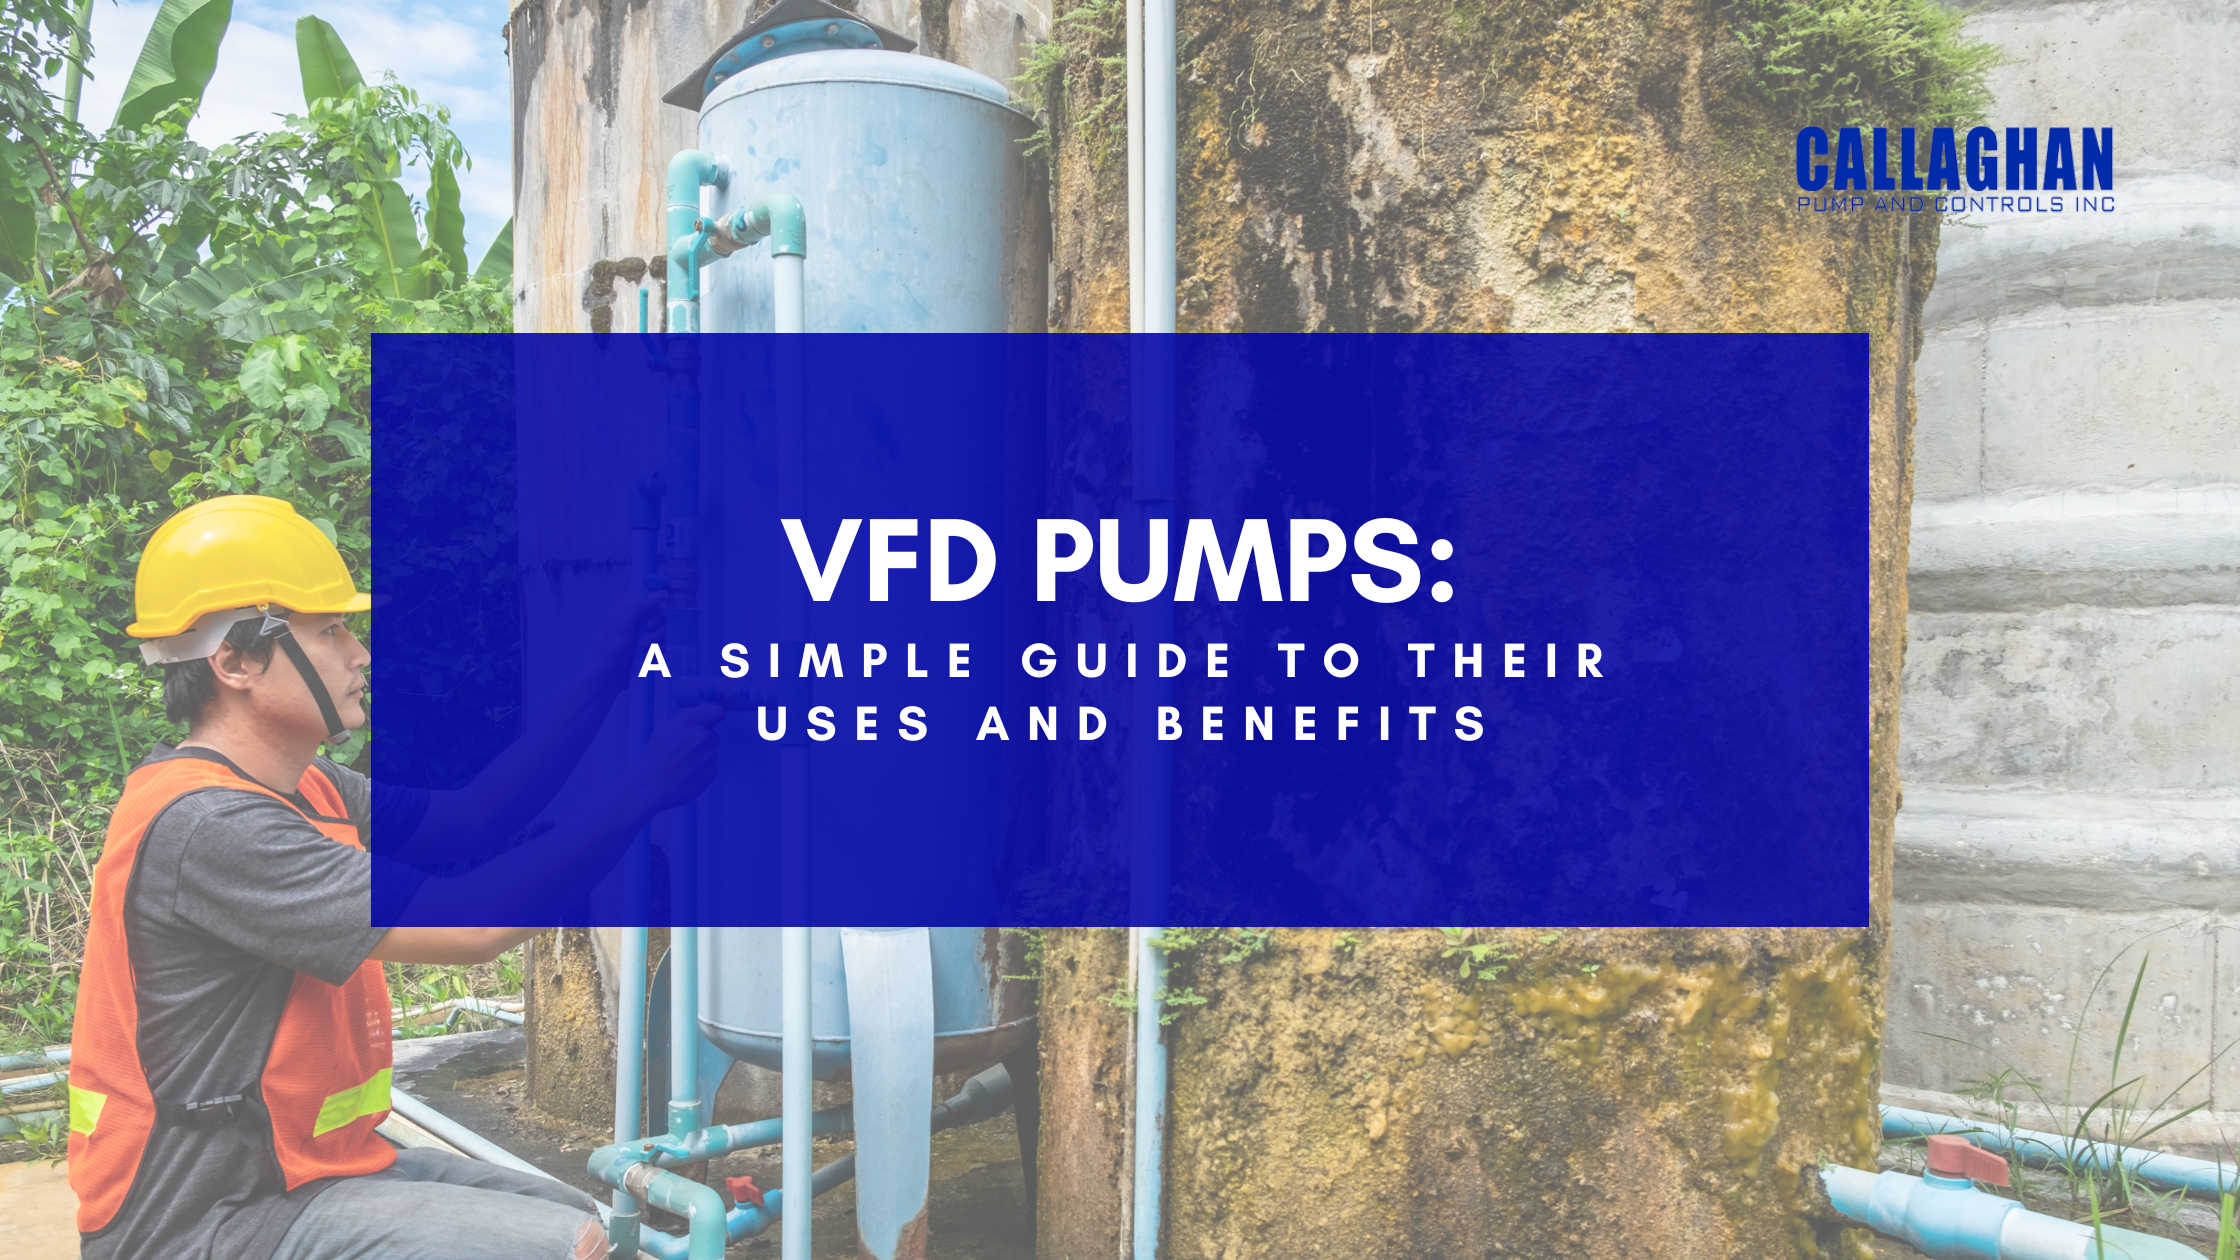 VFD pumps